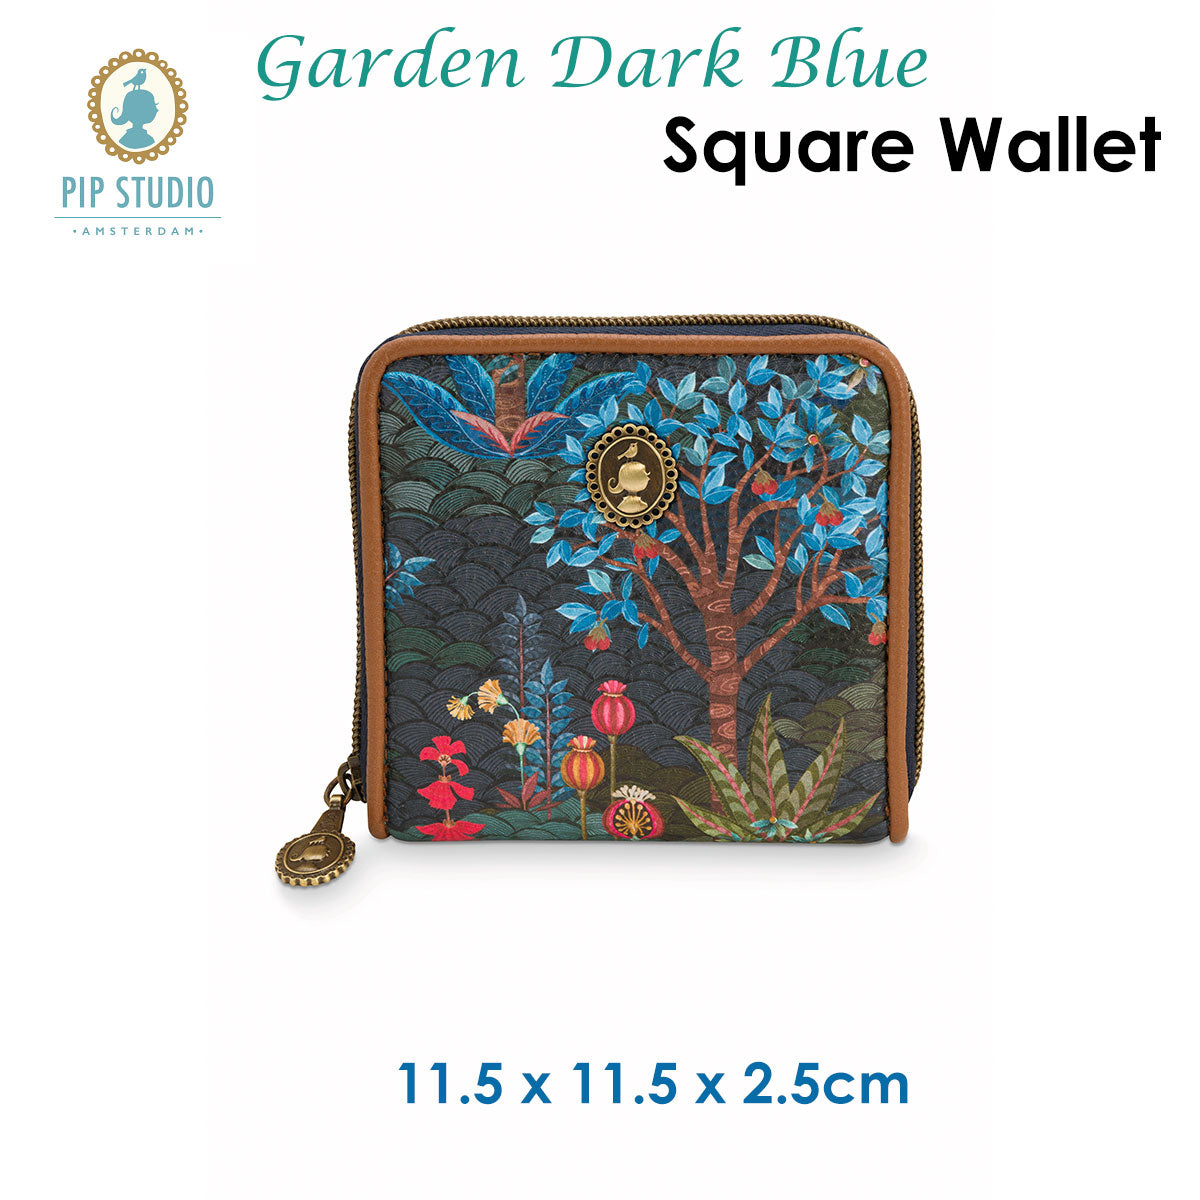 Garden Dark Blue Square Wallet